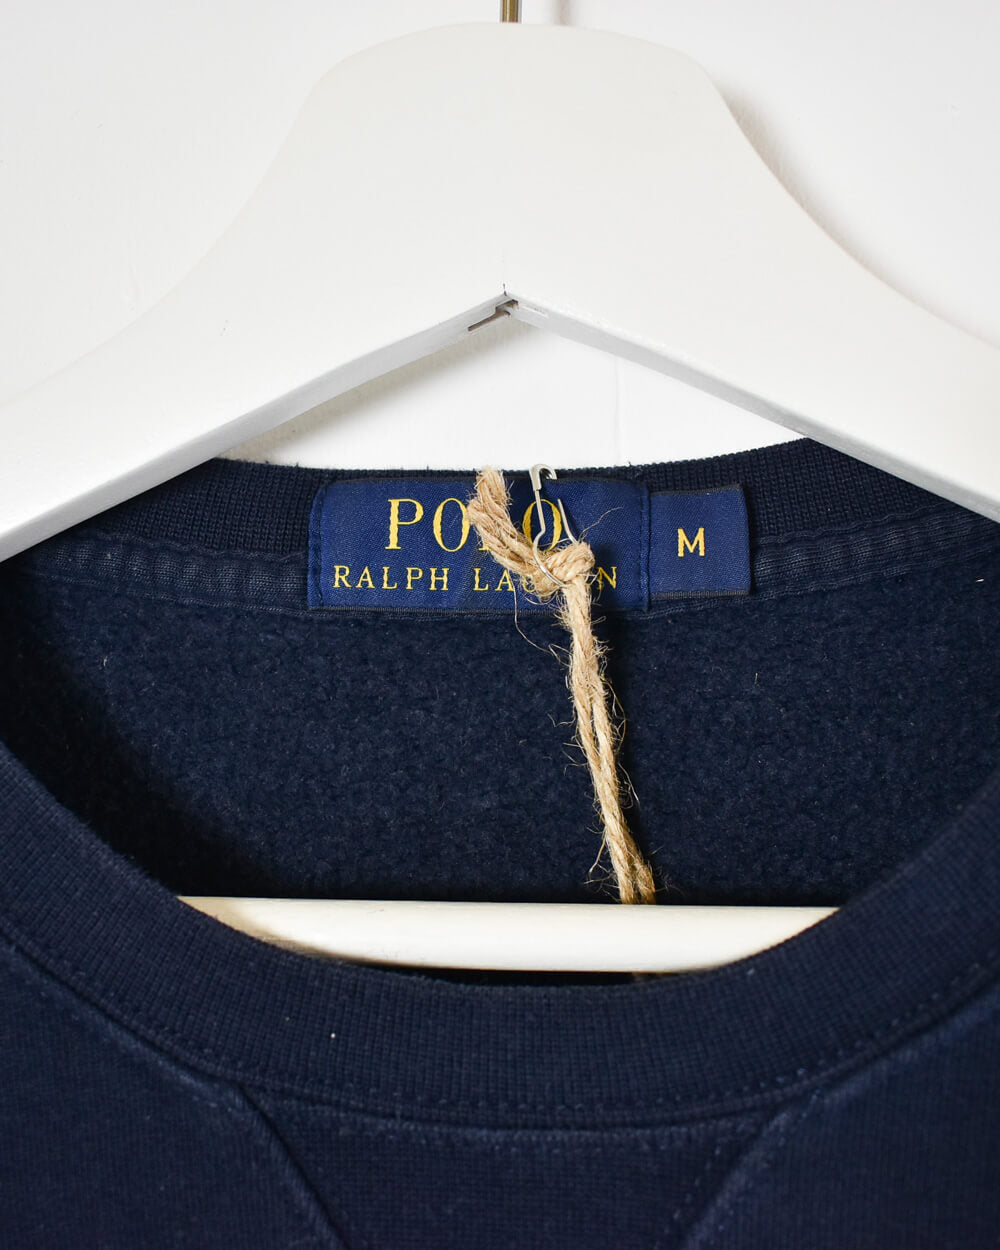 Navy Ralph Lauren Sweatshirt - Medium